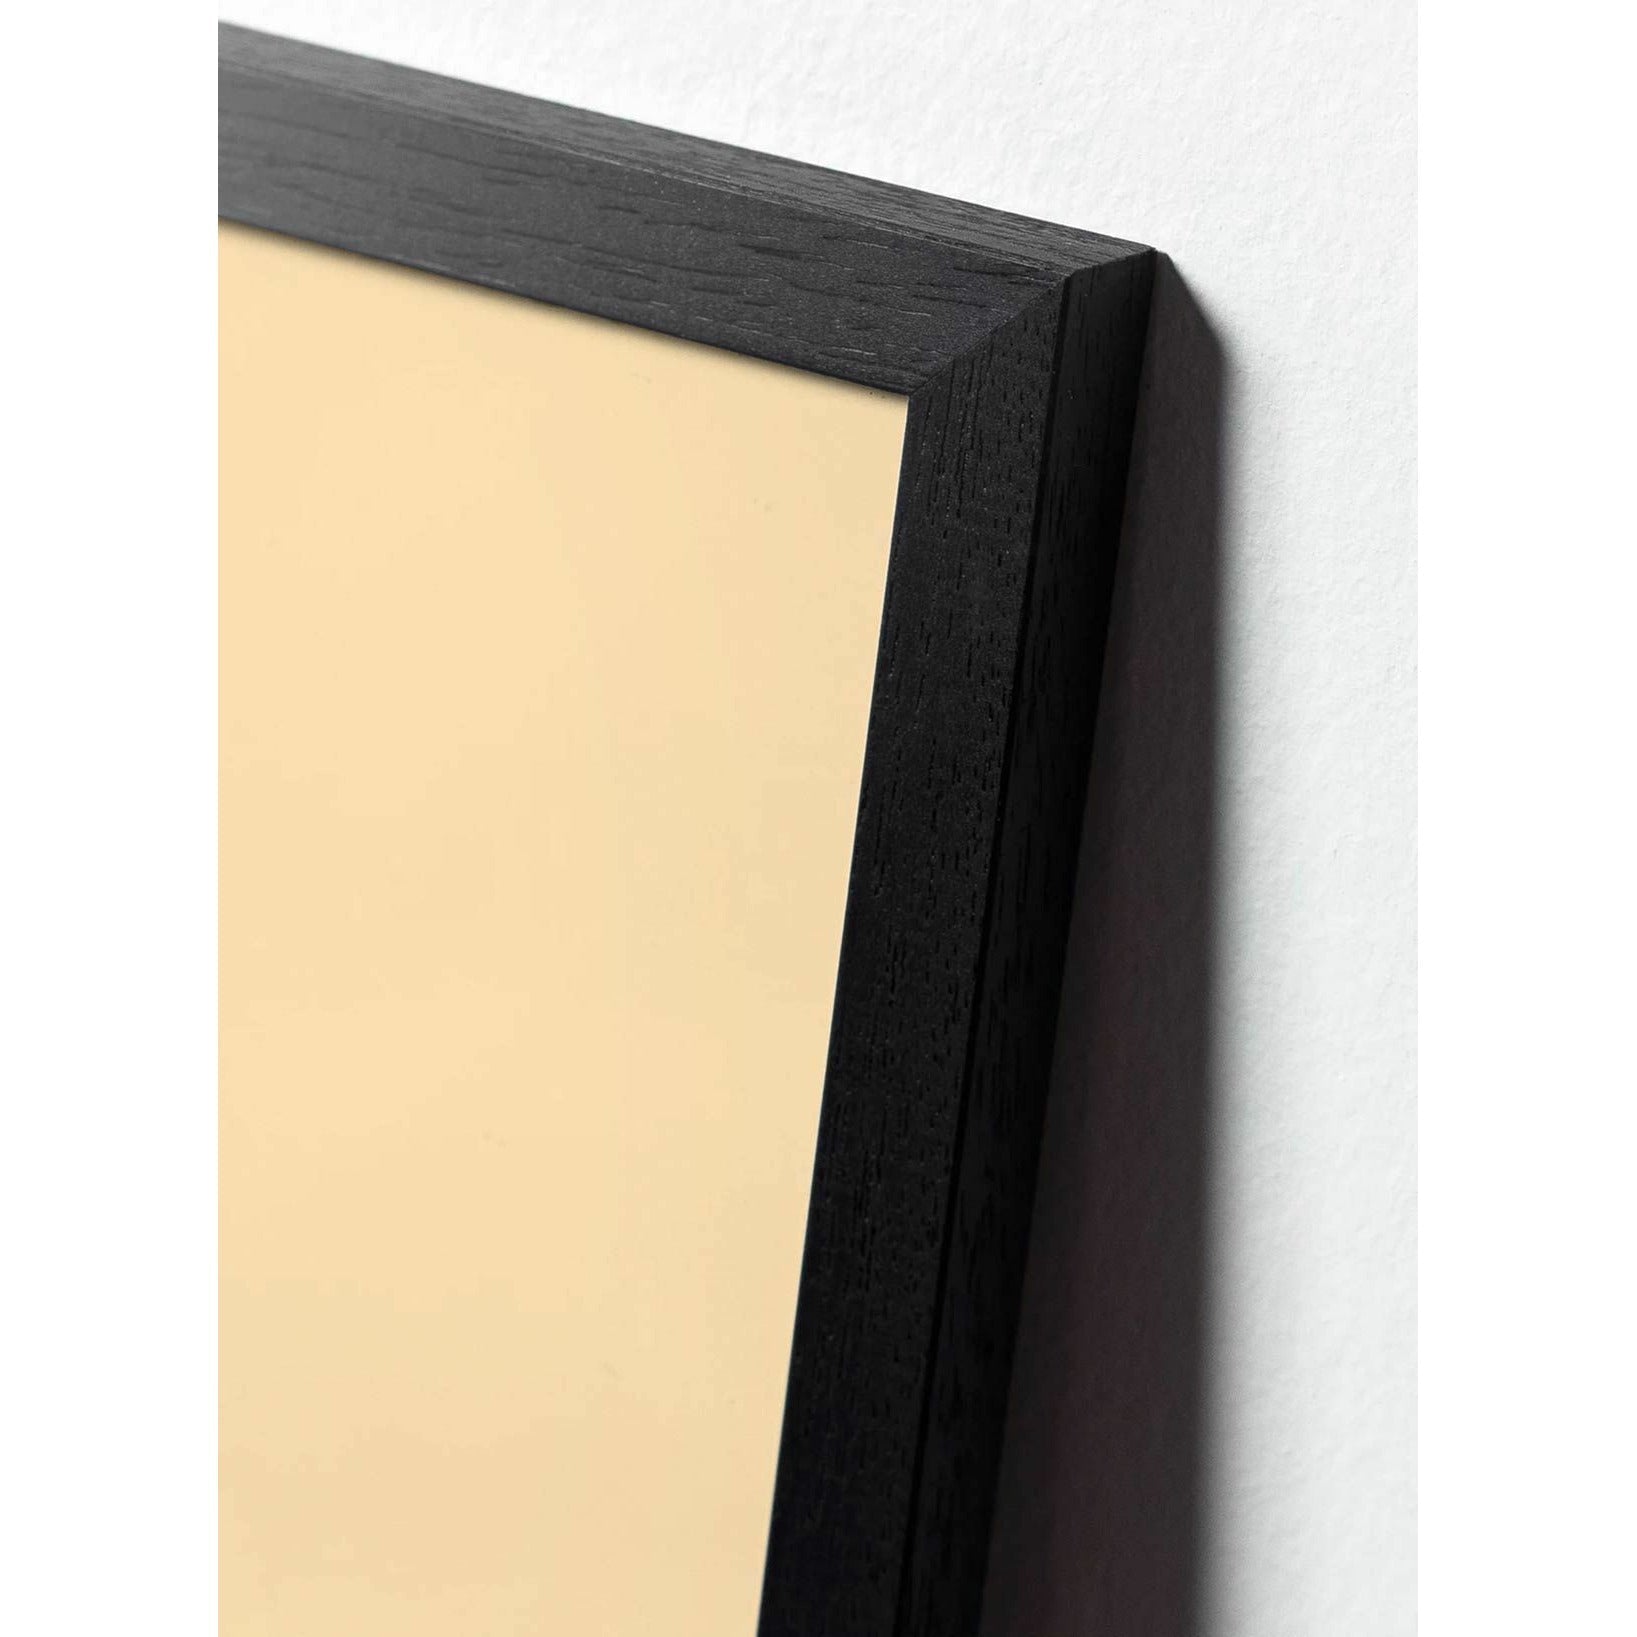 Póster de la línea de osito de peluche, marco en madera lacada negra de 70x100 cm, fondo blanco